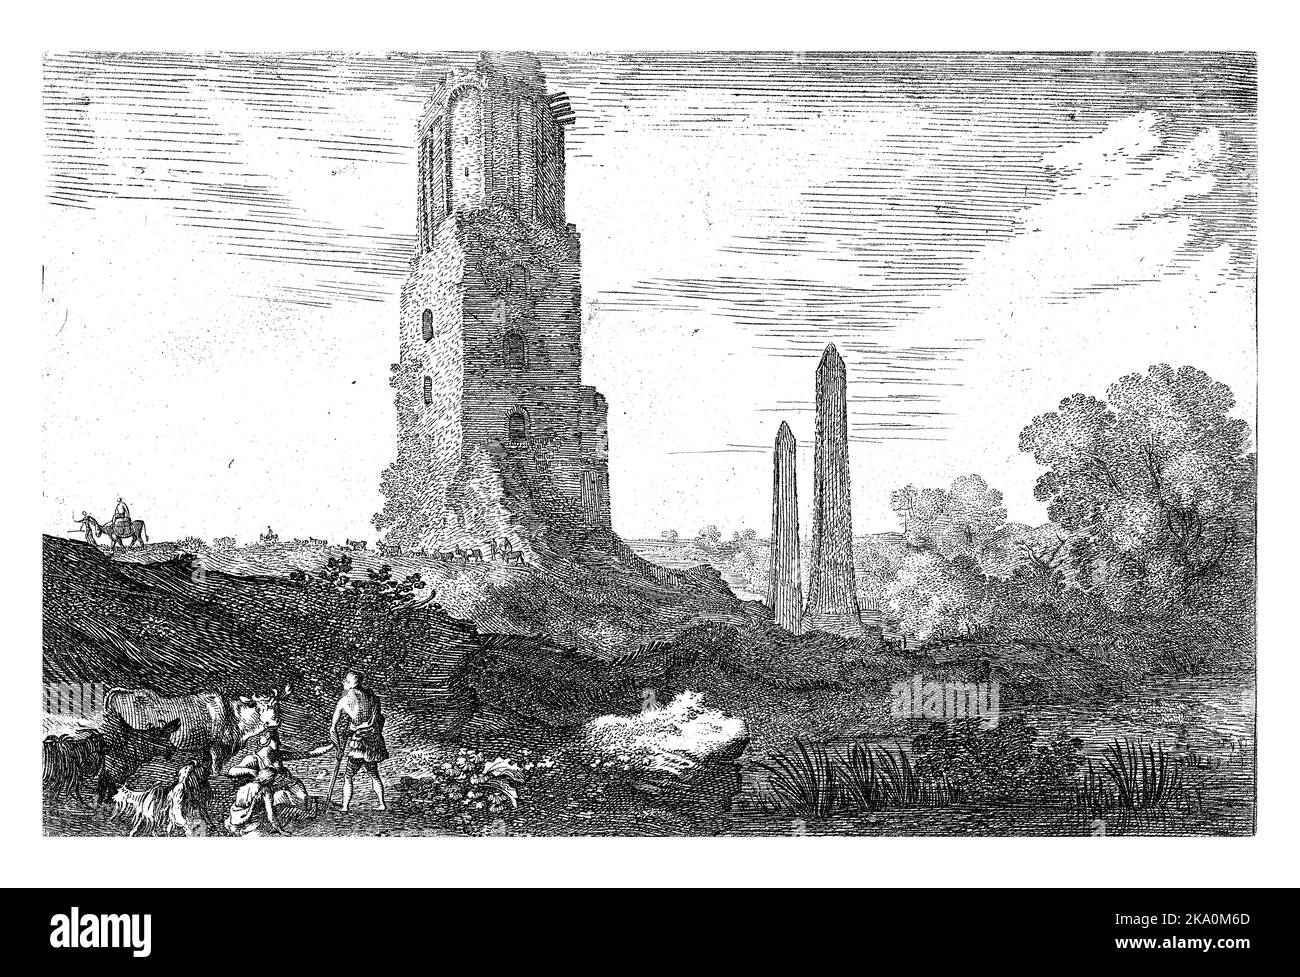 Accanto alla Torre delle milizie si trovano due obelischi. Un gruppo di viaggiatori a cavallo passa accanto alla torre. Foto Stock